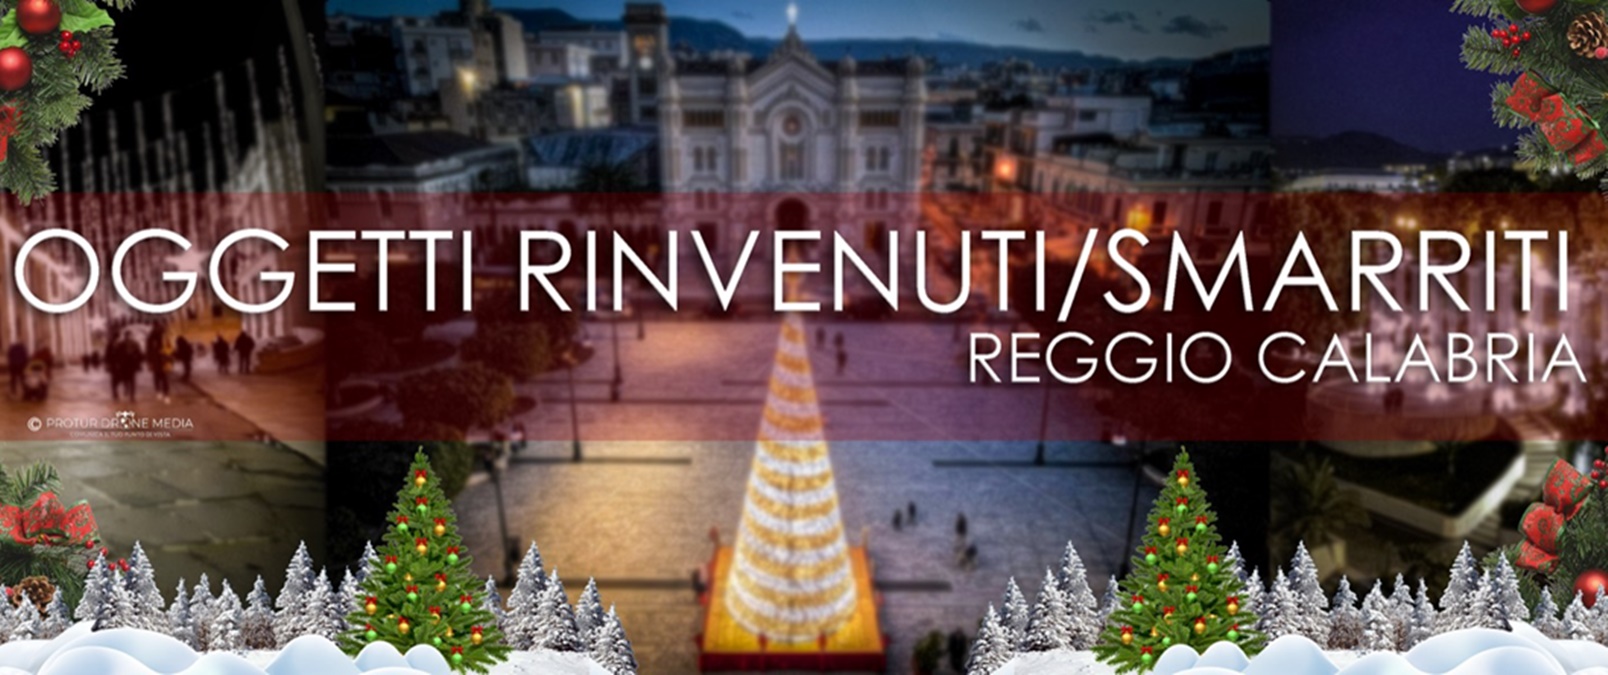 Festeggia un anno il gruppo social “Oggetti rinvenuti-smarriti Reggio Calabria”